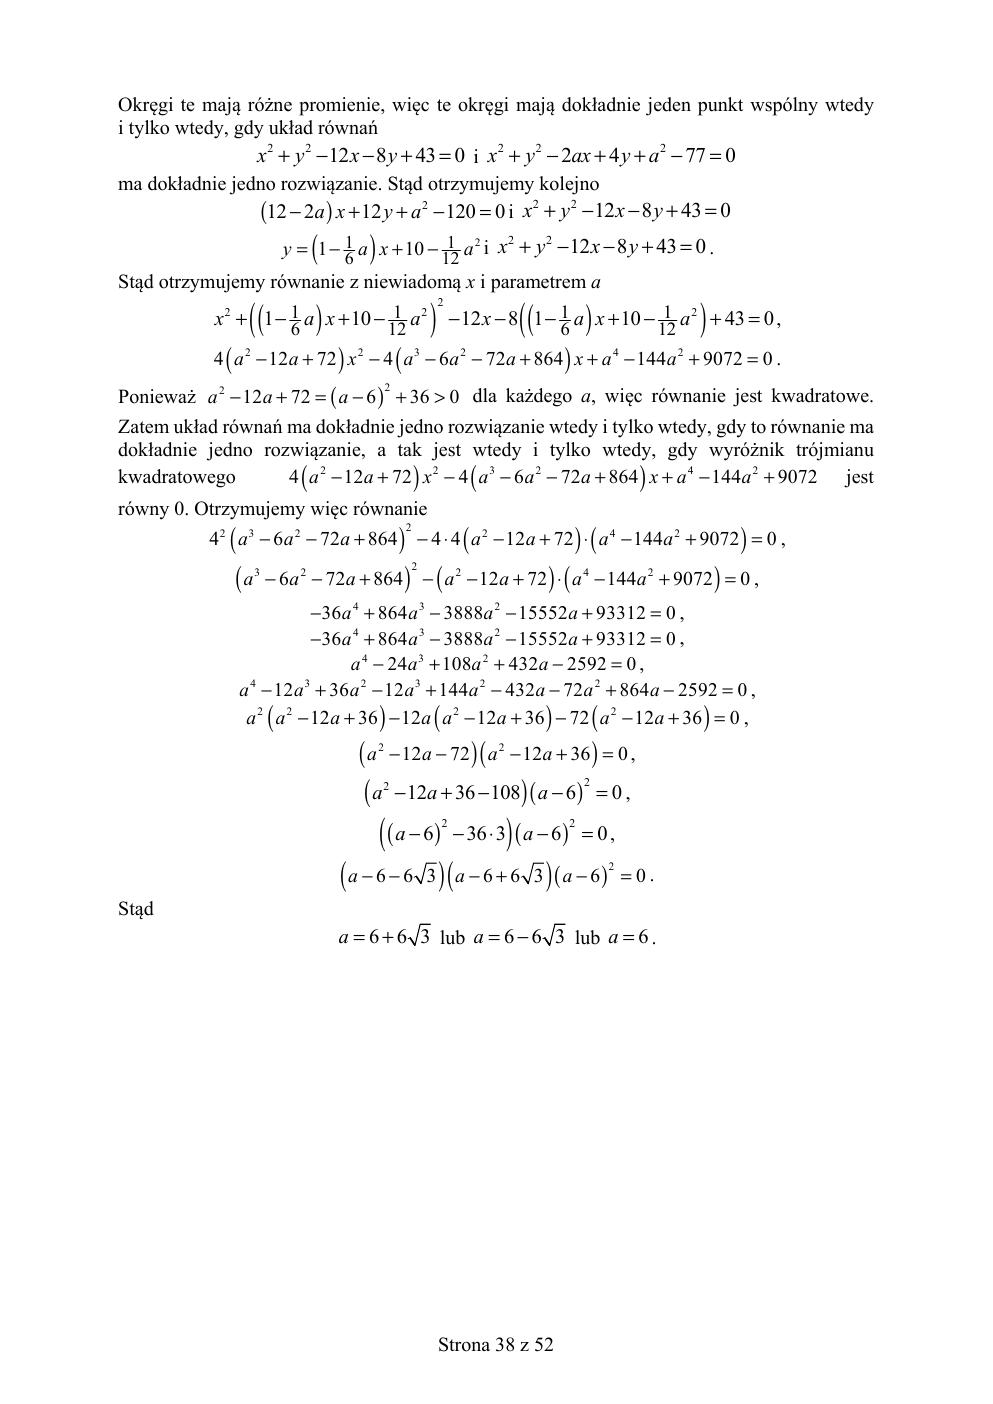 matematyka rozszerzony - matura 2019 - odpowiedzi-38